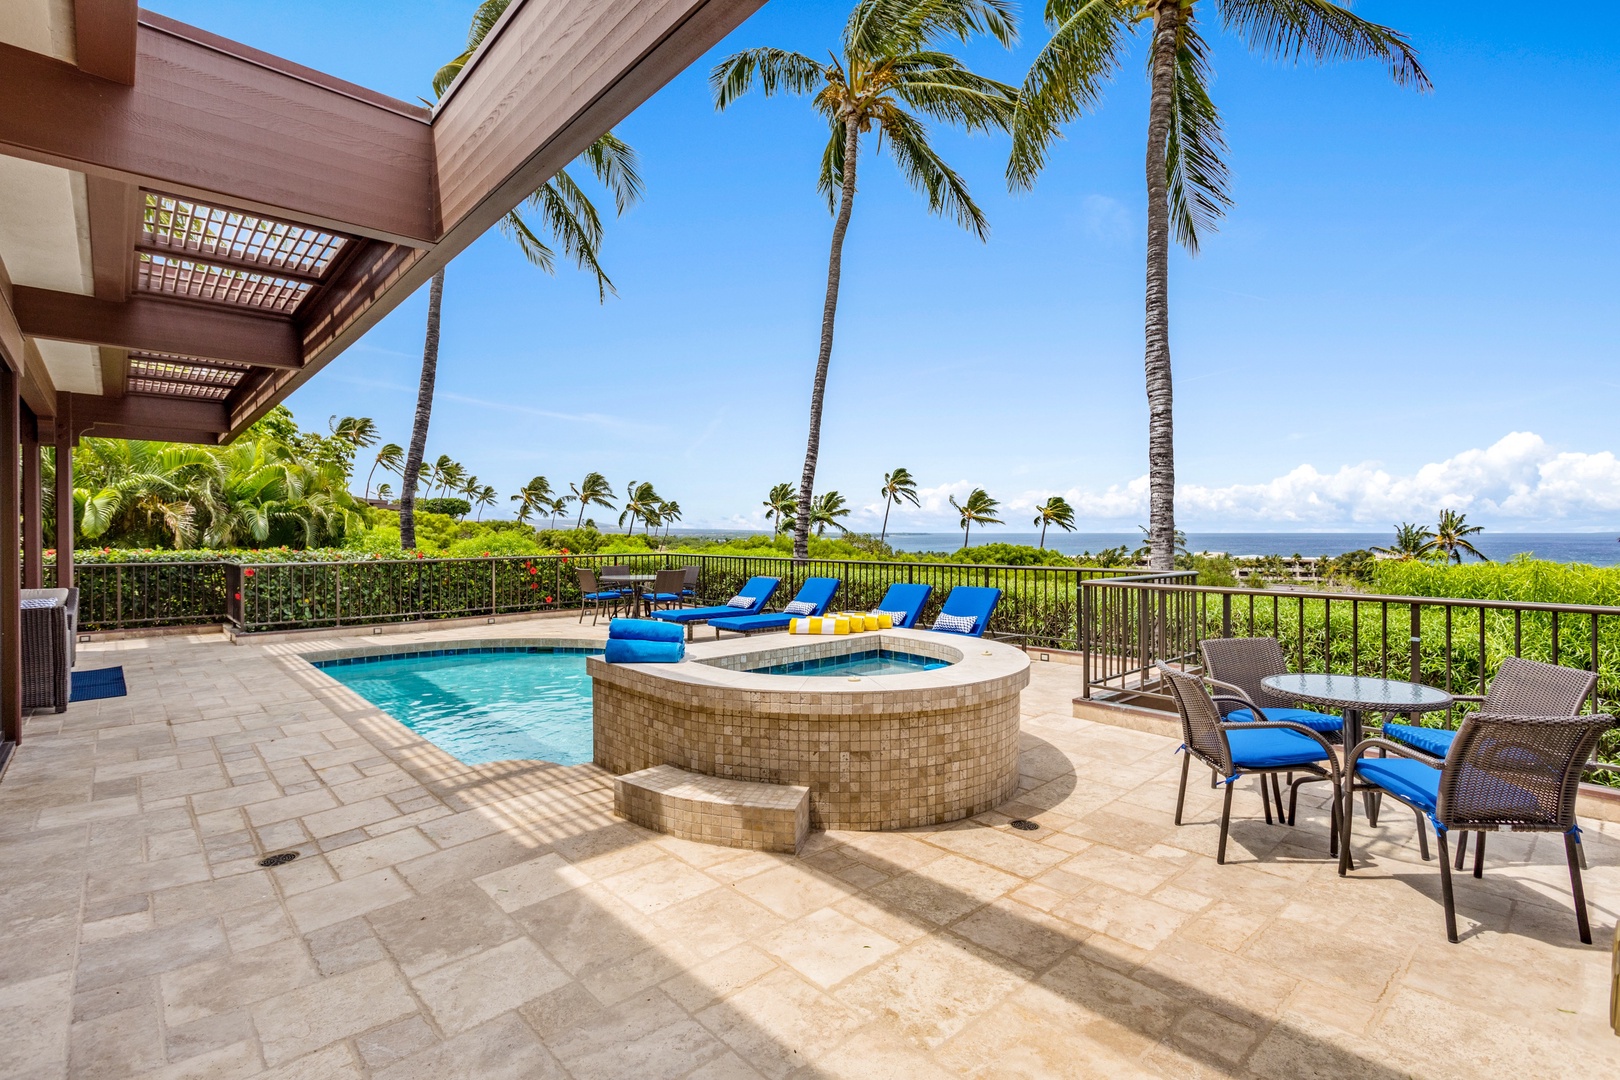 Kamuela Vacation Rentals, 3BD Villas (39) at Mauna Kea Resort - View from upper lanai seating, toward jacuzzi and pool deck.